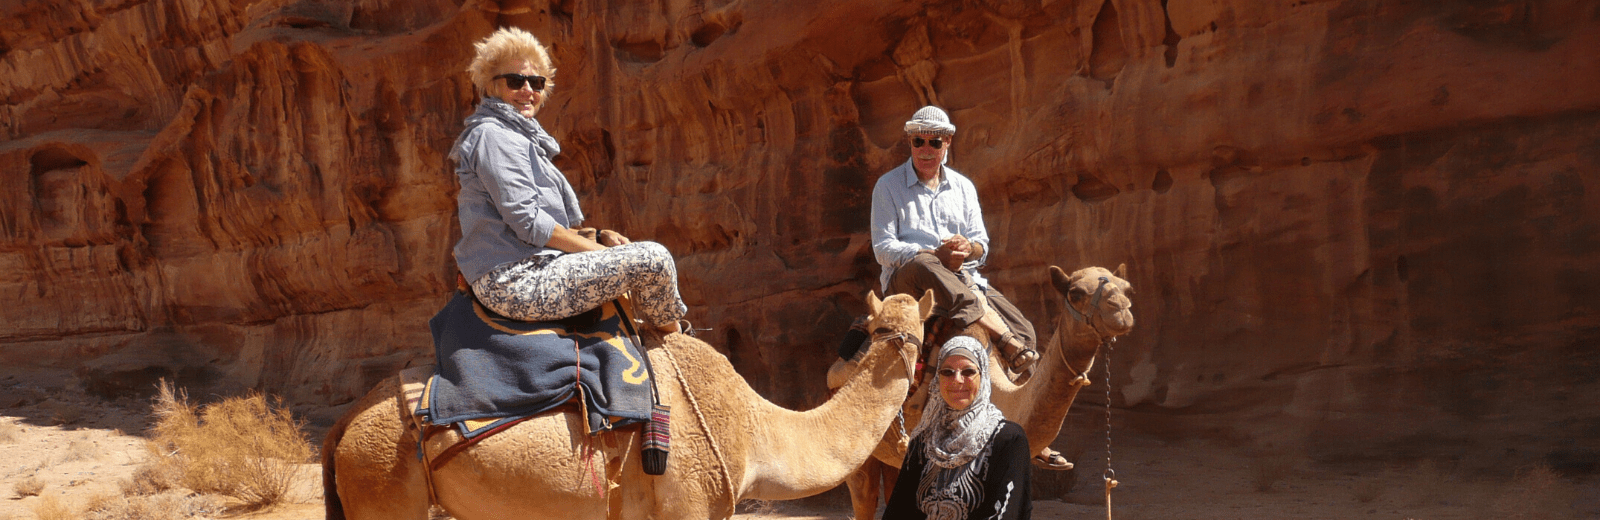 Retraite met kamelen met de Bedoeïenen in Wadi Rum. Jordan Desert Journeys